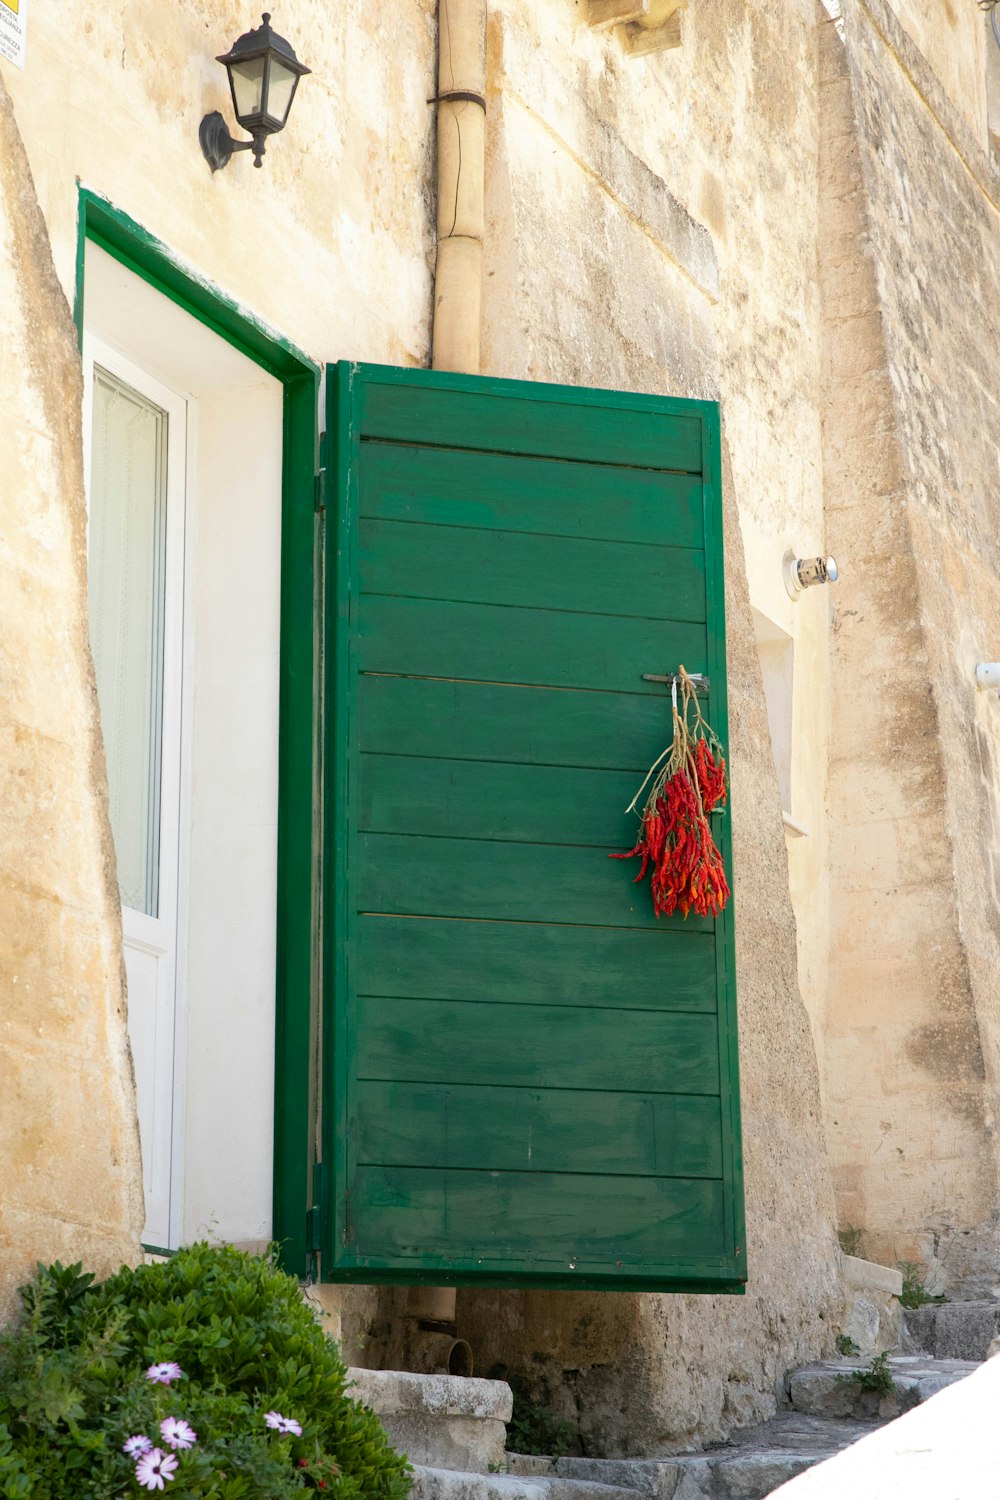 fregona roja y blanca apoyada en una puerta de madera verde